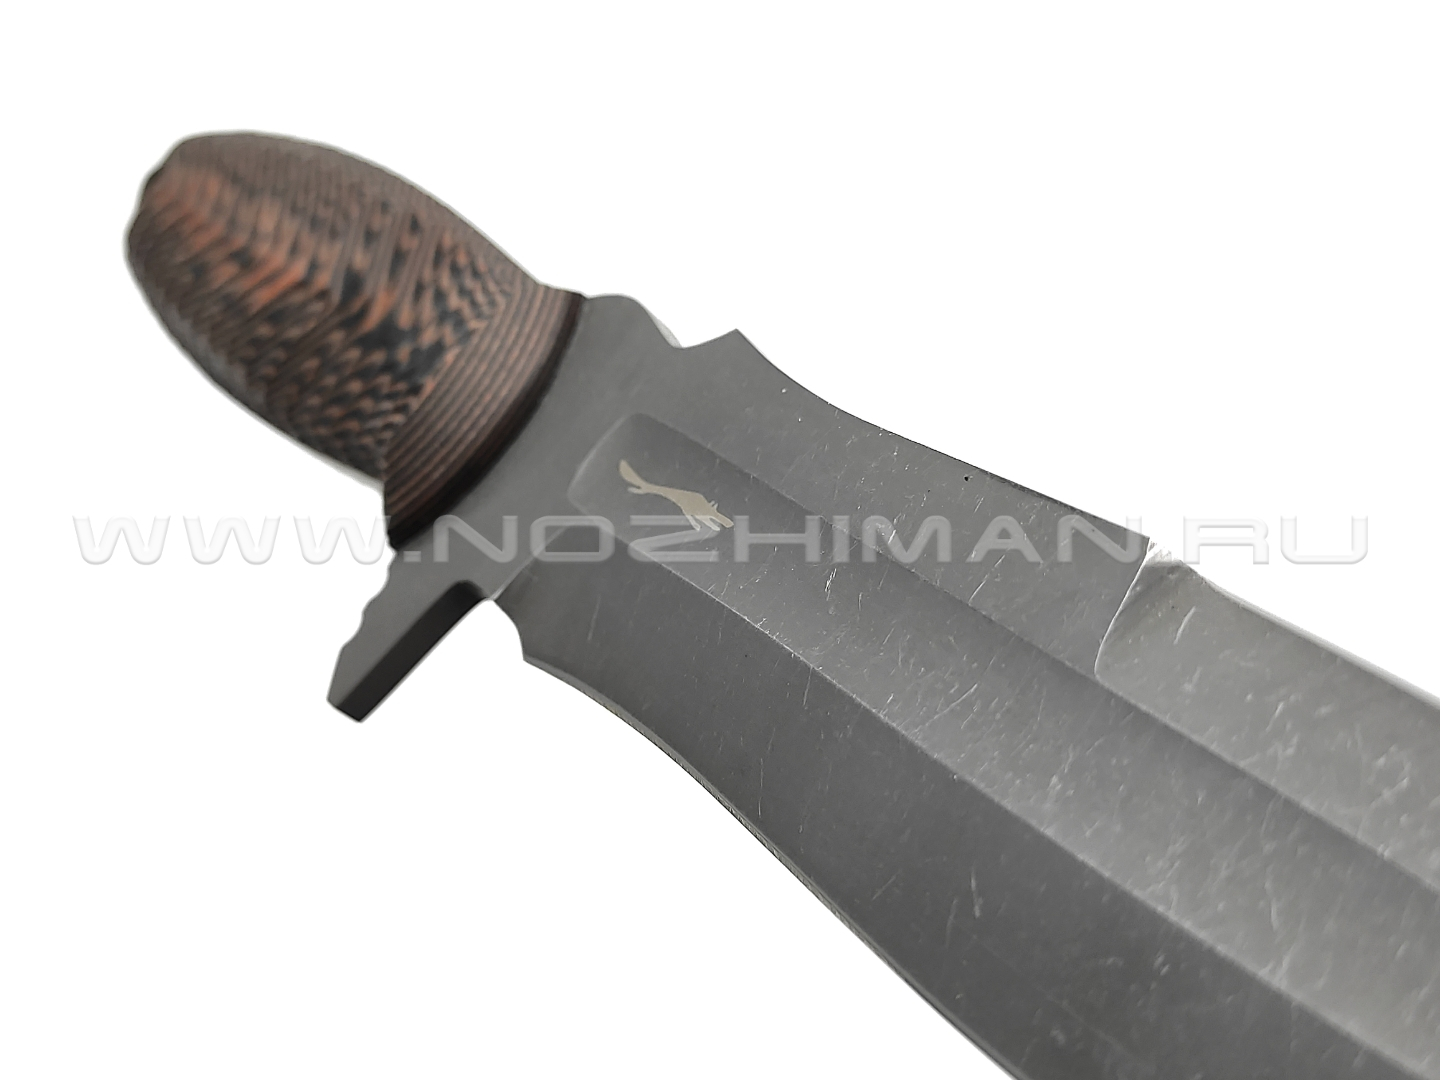 Волчий Век нож Стрела Custom сталь N690 WA blackwash, рукоять G10 black & orange